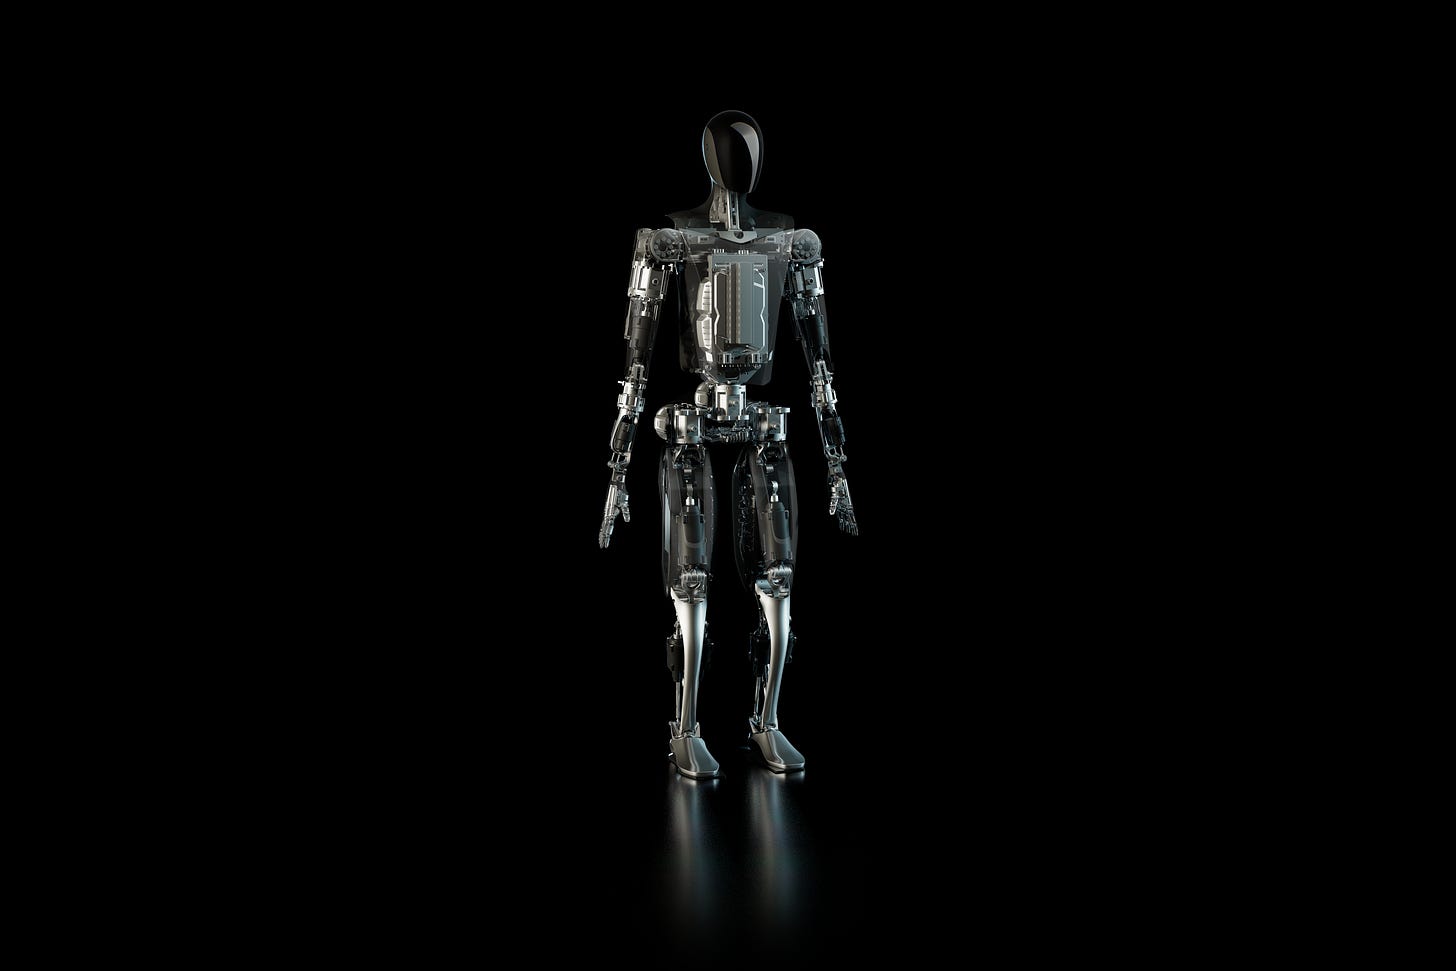 Image of TeslaBot on black background